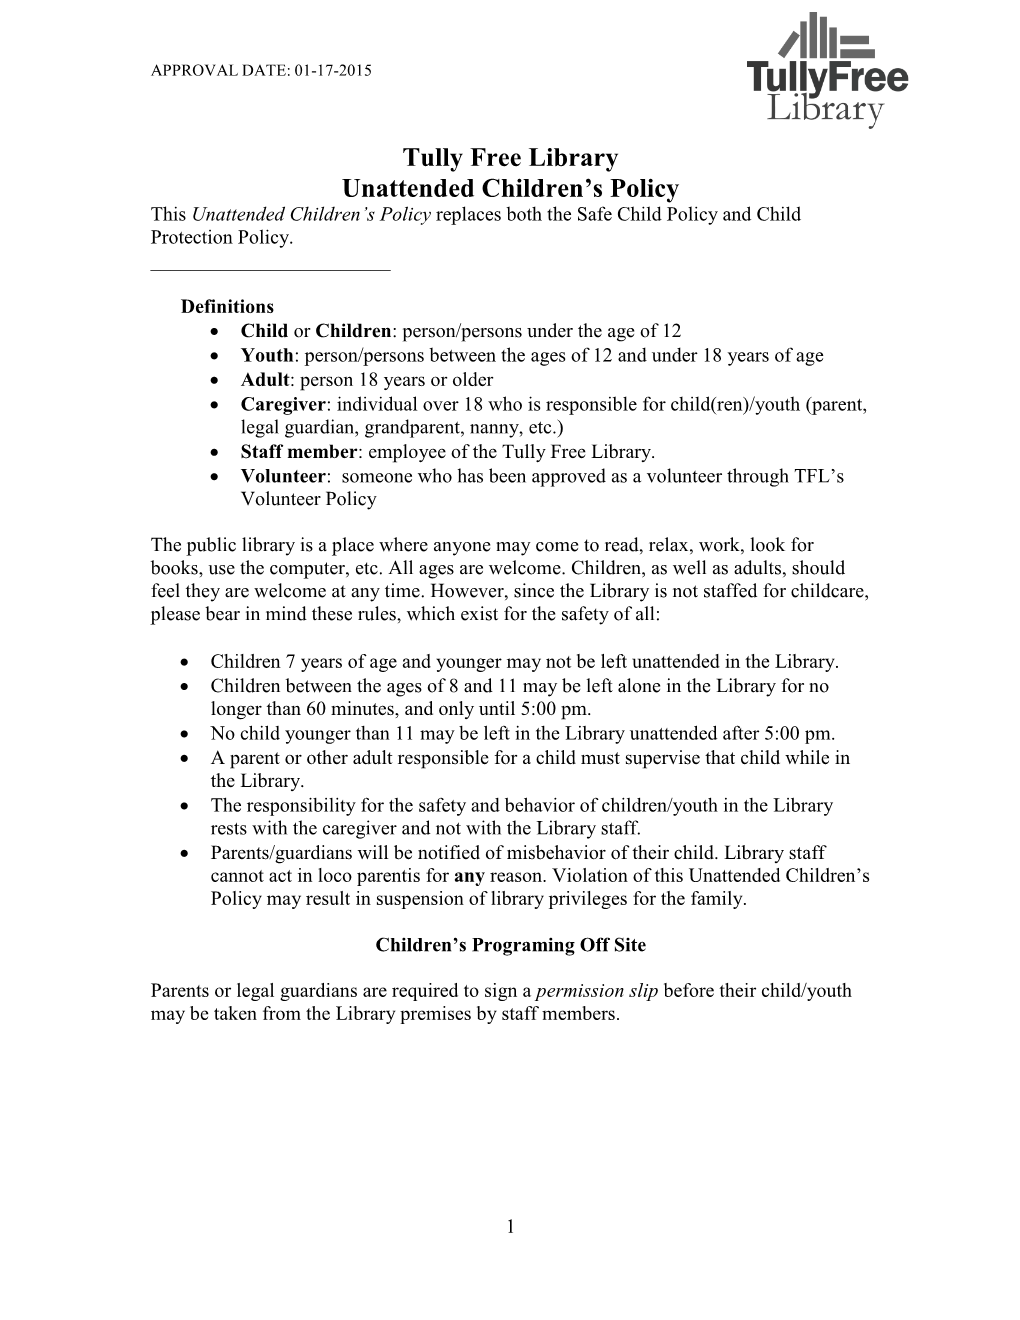 Unattended Children Policy